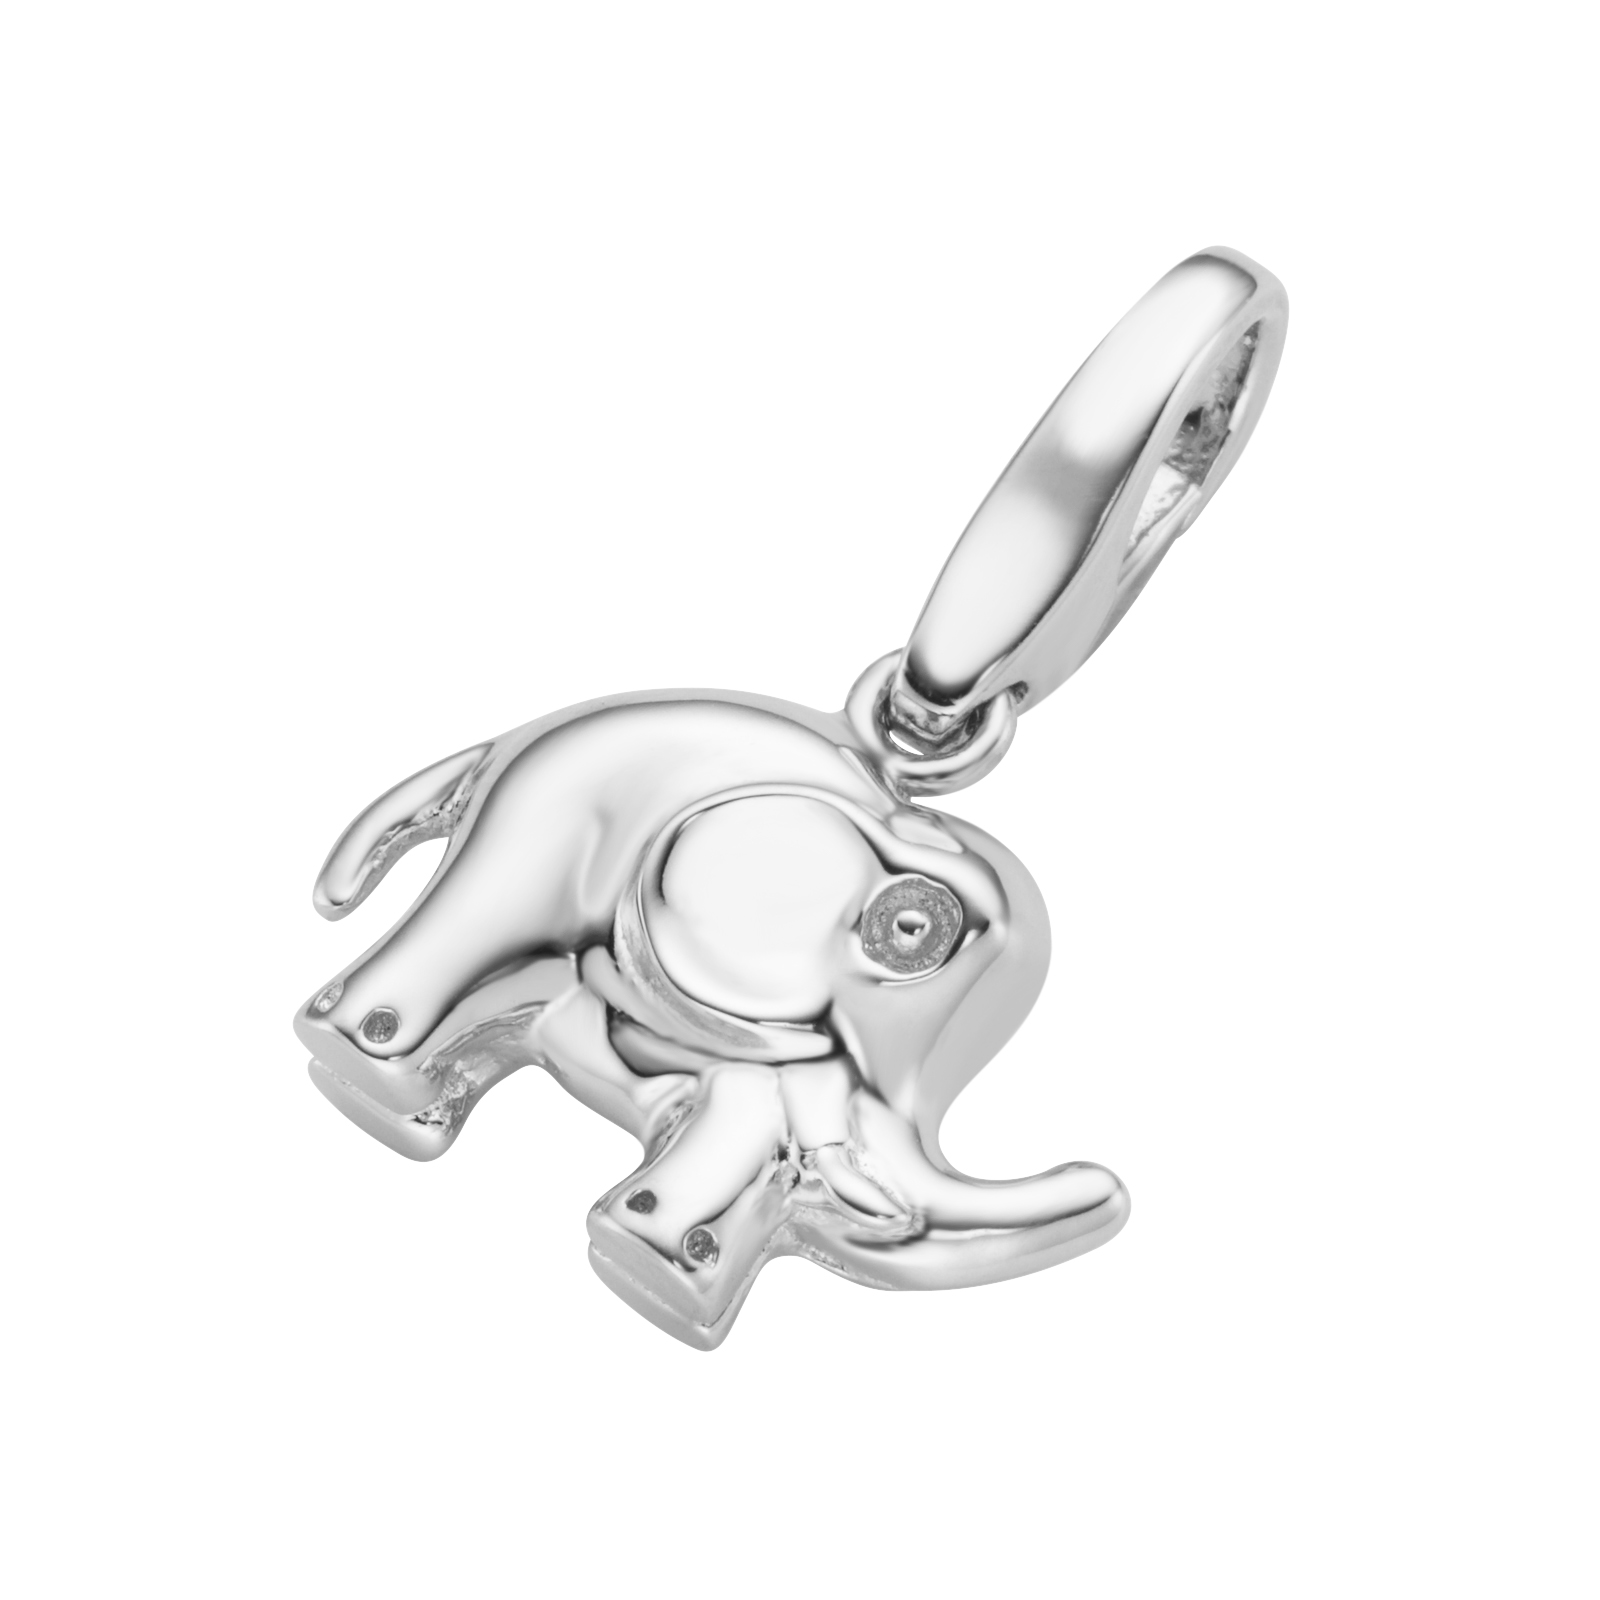 Giorgio Martello Milano Charm Elefant 825039 günstig kaufen bei Juwelierwelt.de © ★ Gratisversand ab 50€ ★ Paypal ★ trusted shops ★ 